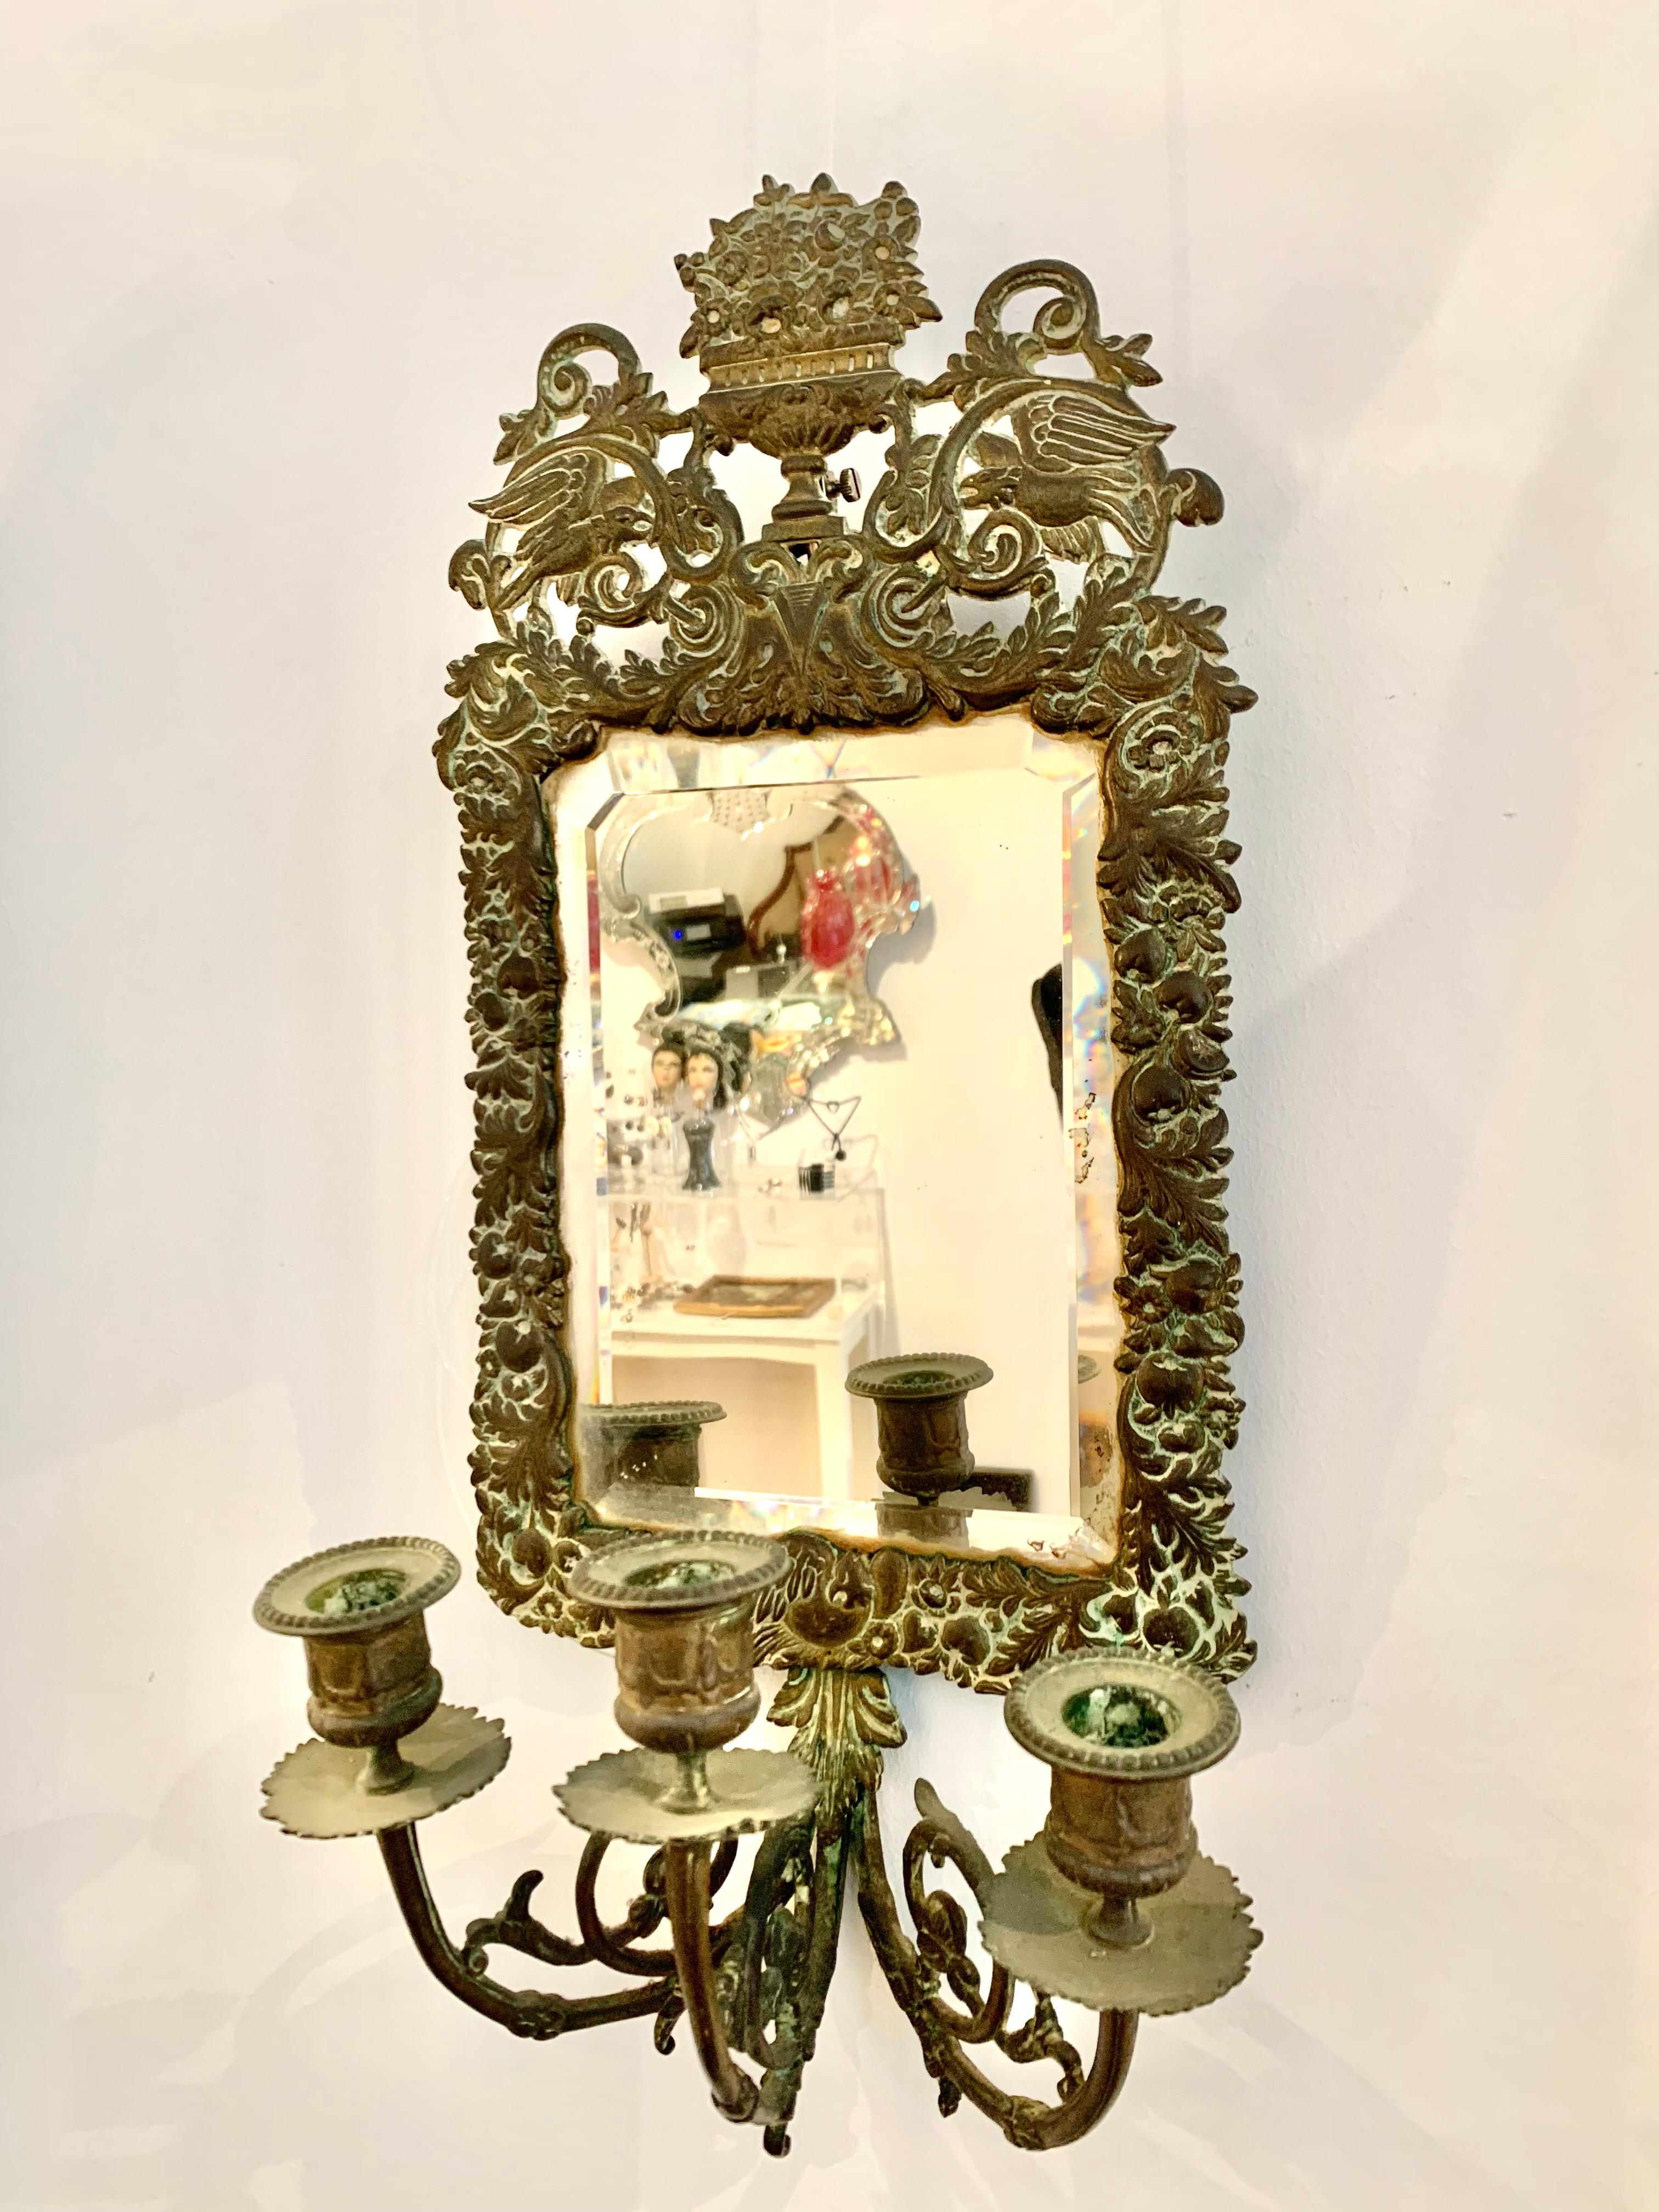 Austrian Antique 18th Century Double Eagle Wall Mirrors Candle Sconces Repoussé Brass For Sale